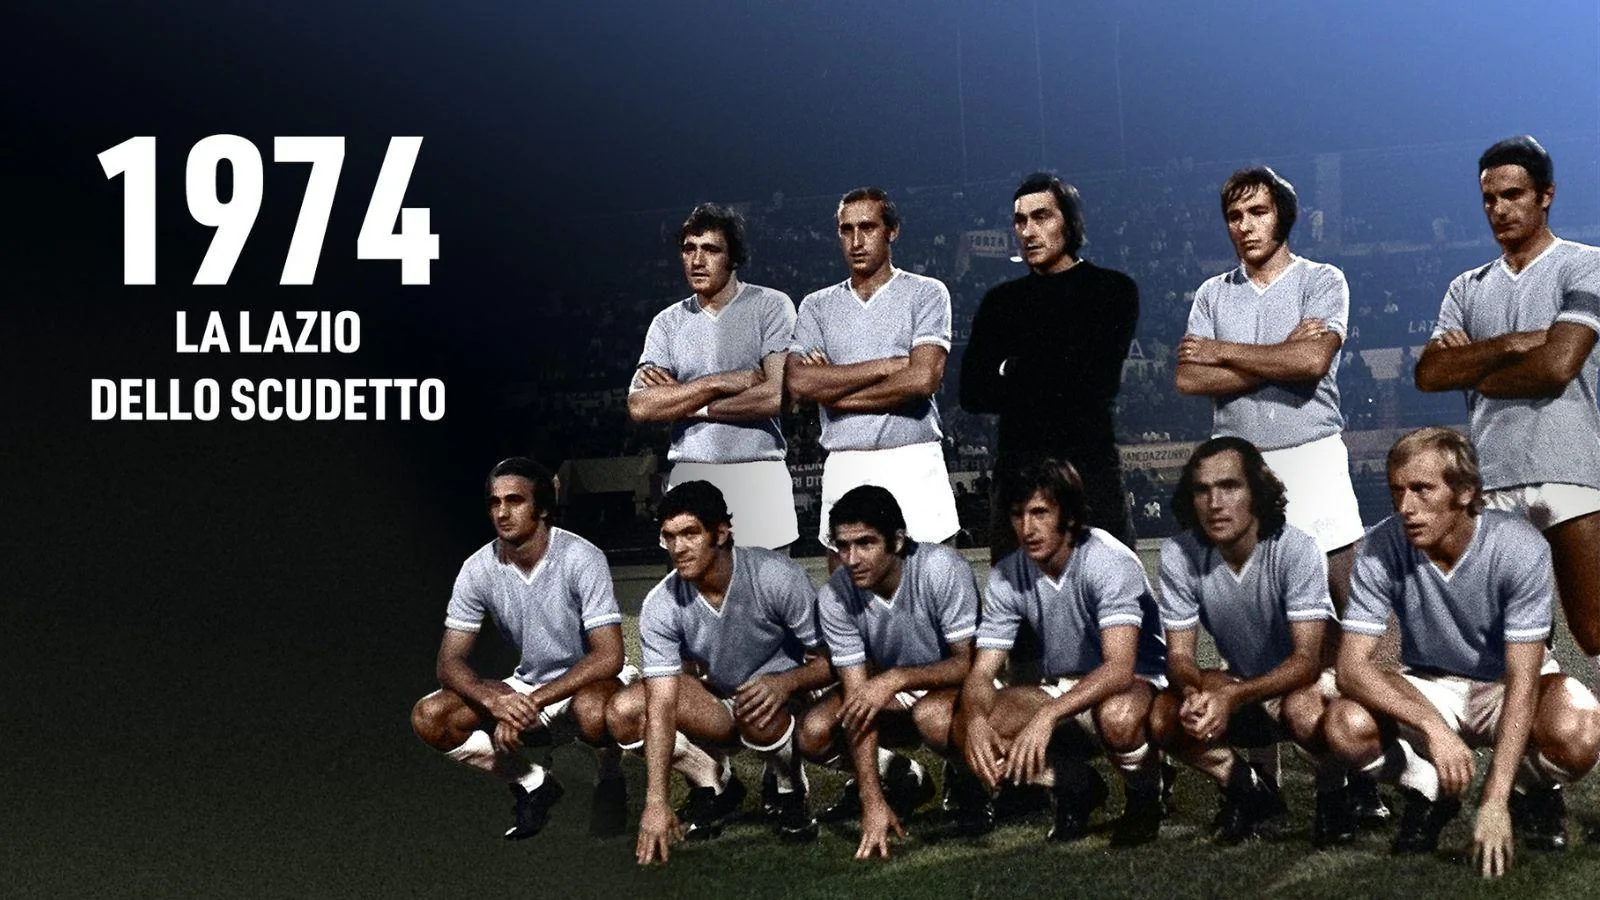 "1974: la Lazio dello scudetto", su Raiplay lo speciale per i 50 anni del trionfo biancoceleste: ecco i dettagli